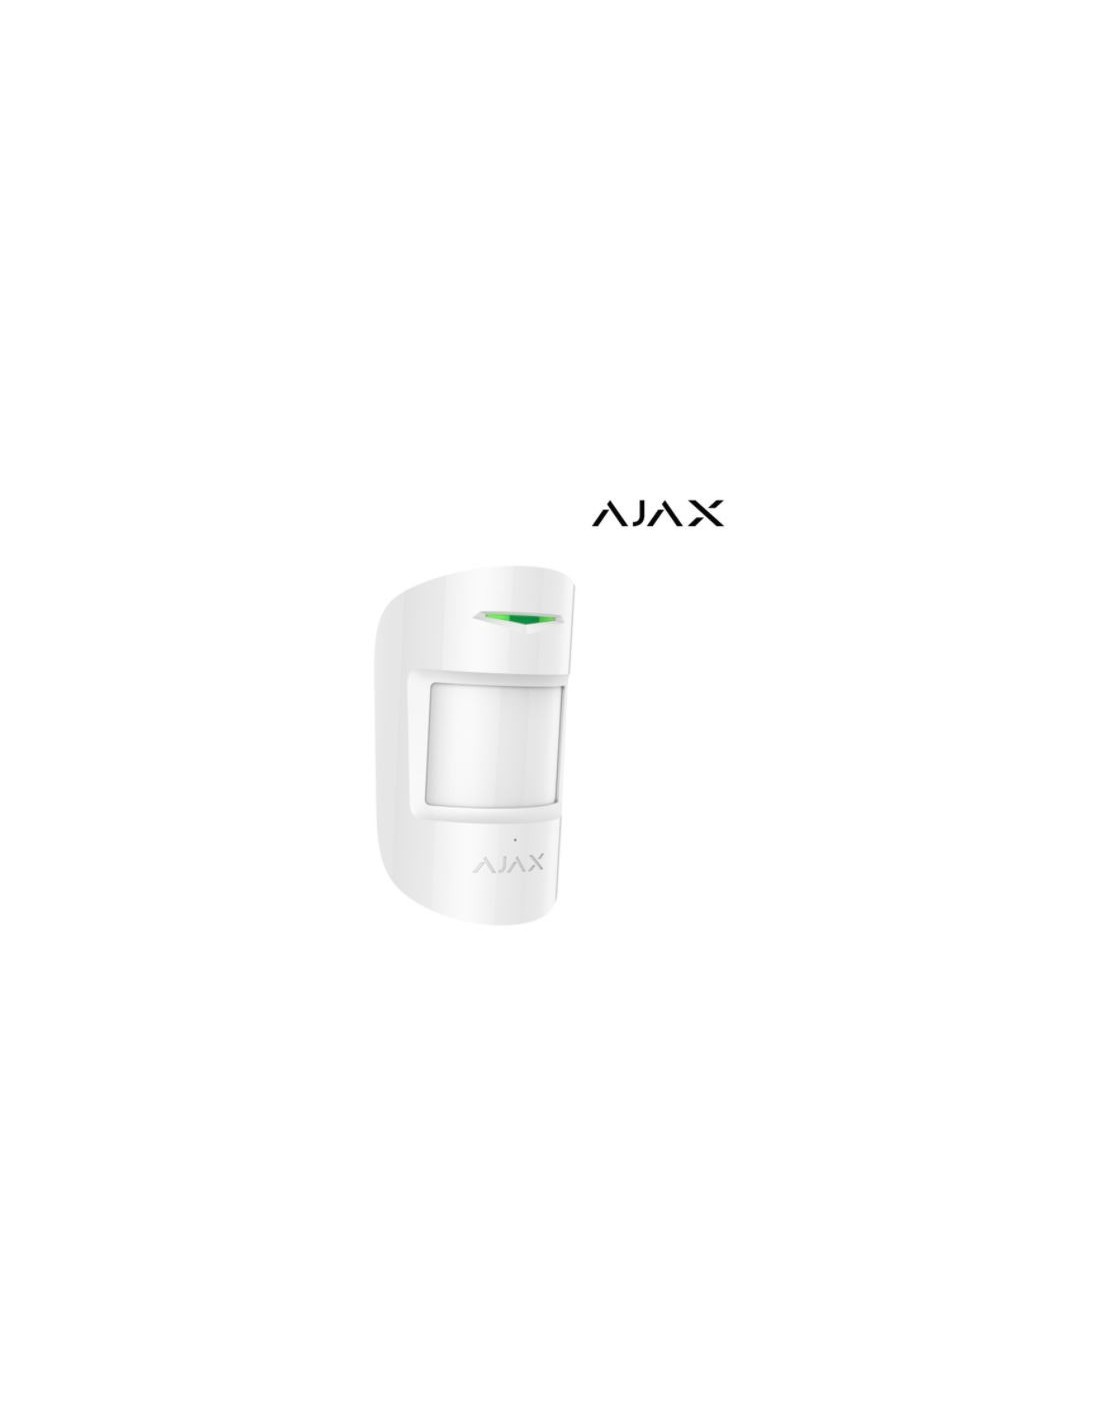 Détecteur de Mouvement et bris de vitre sans Fil immunité Animaux pour Alarme AJAX Ref CombiProtect Accessoire Alarme